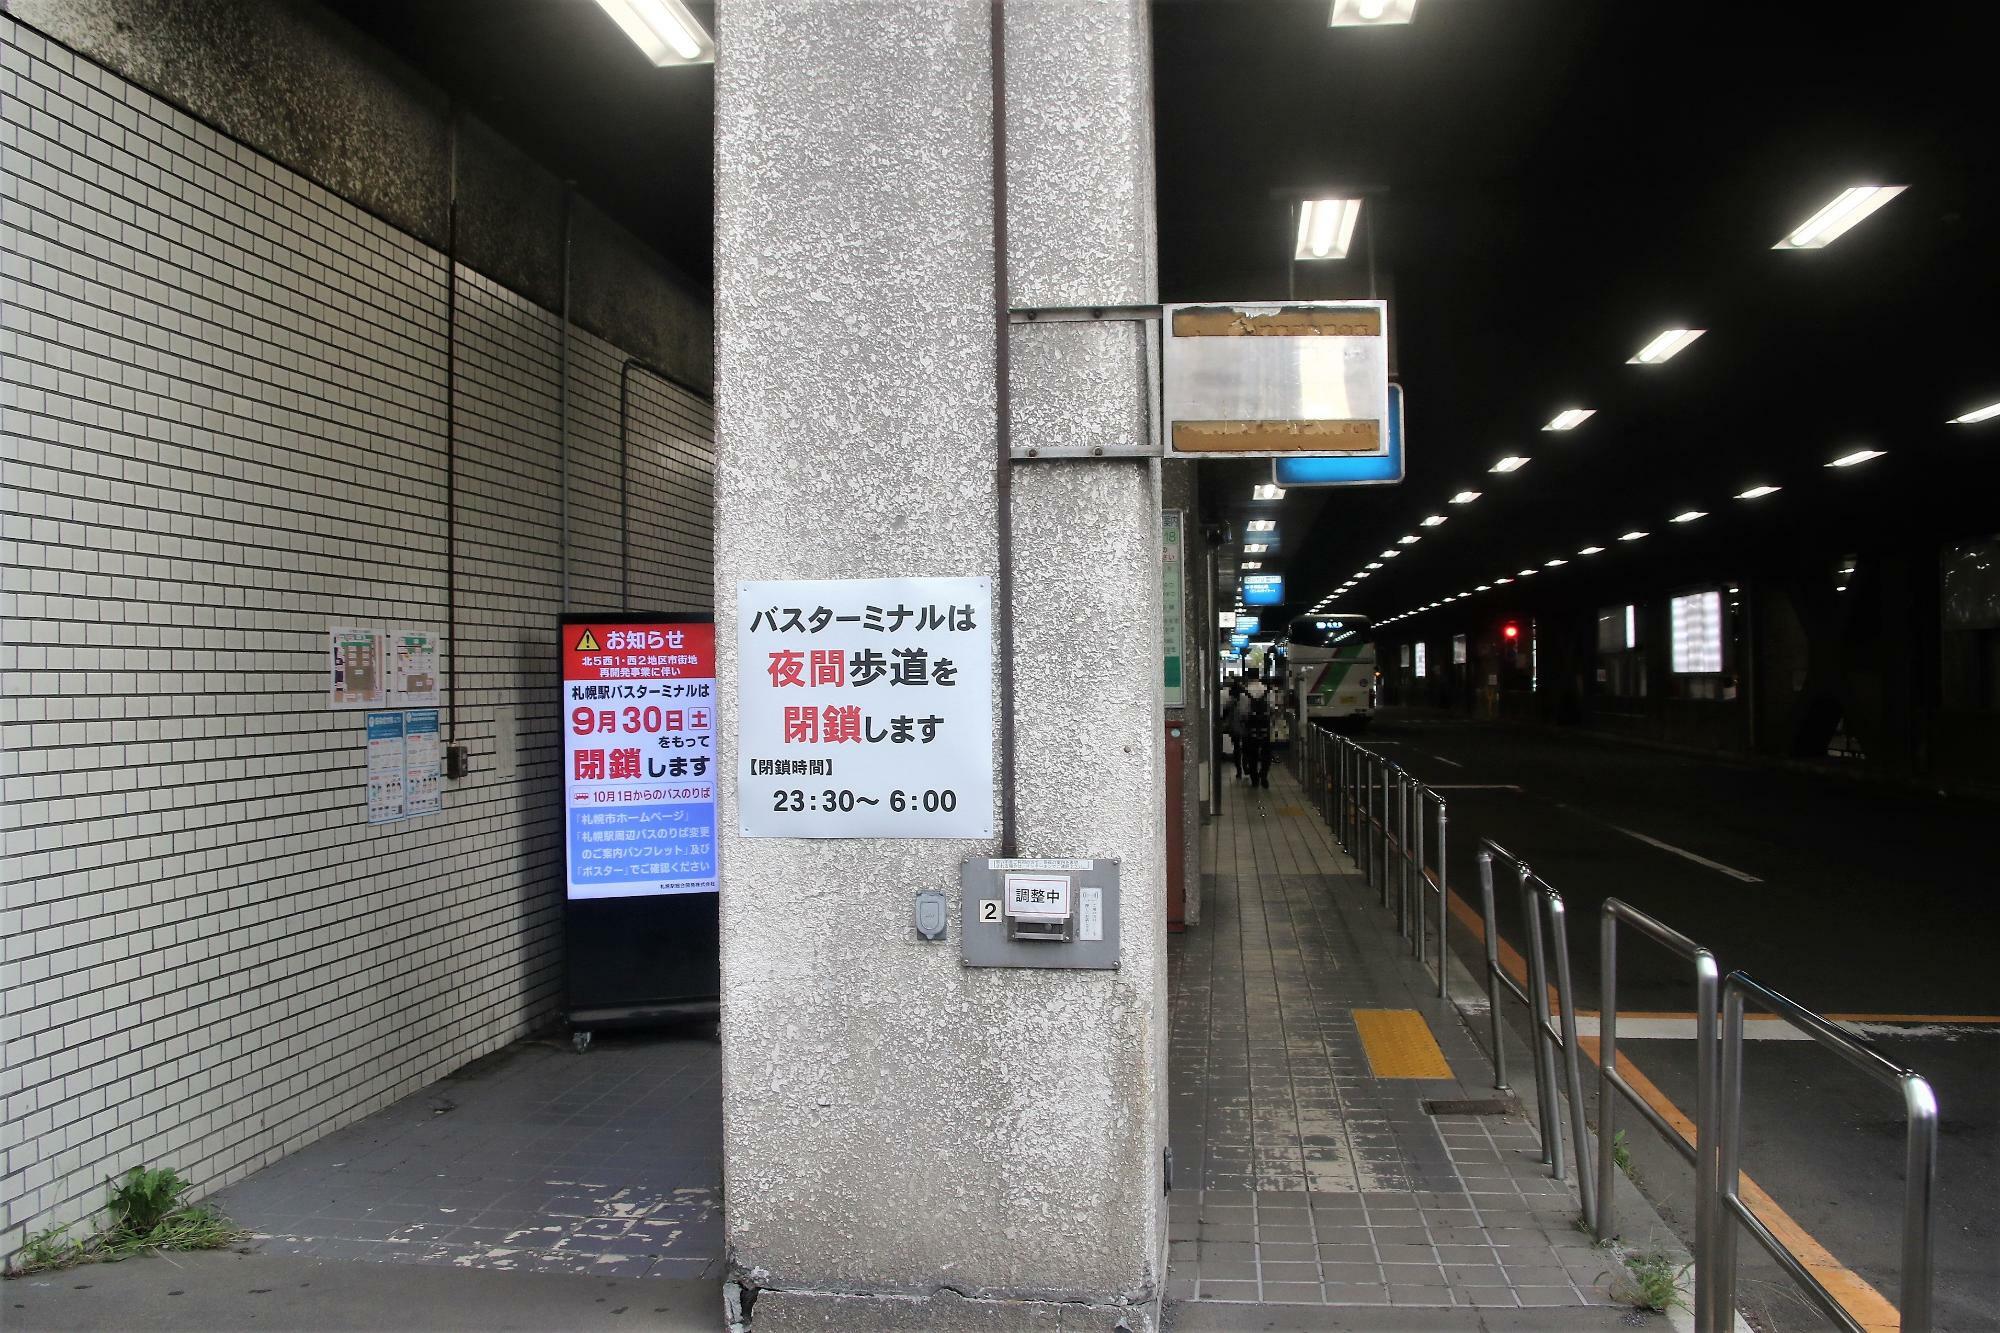 札幌駅バスターミナル北西側にある通路